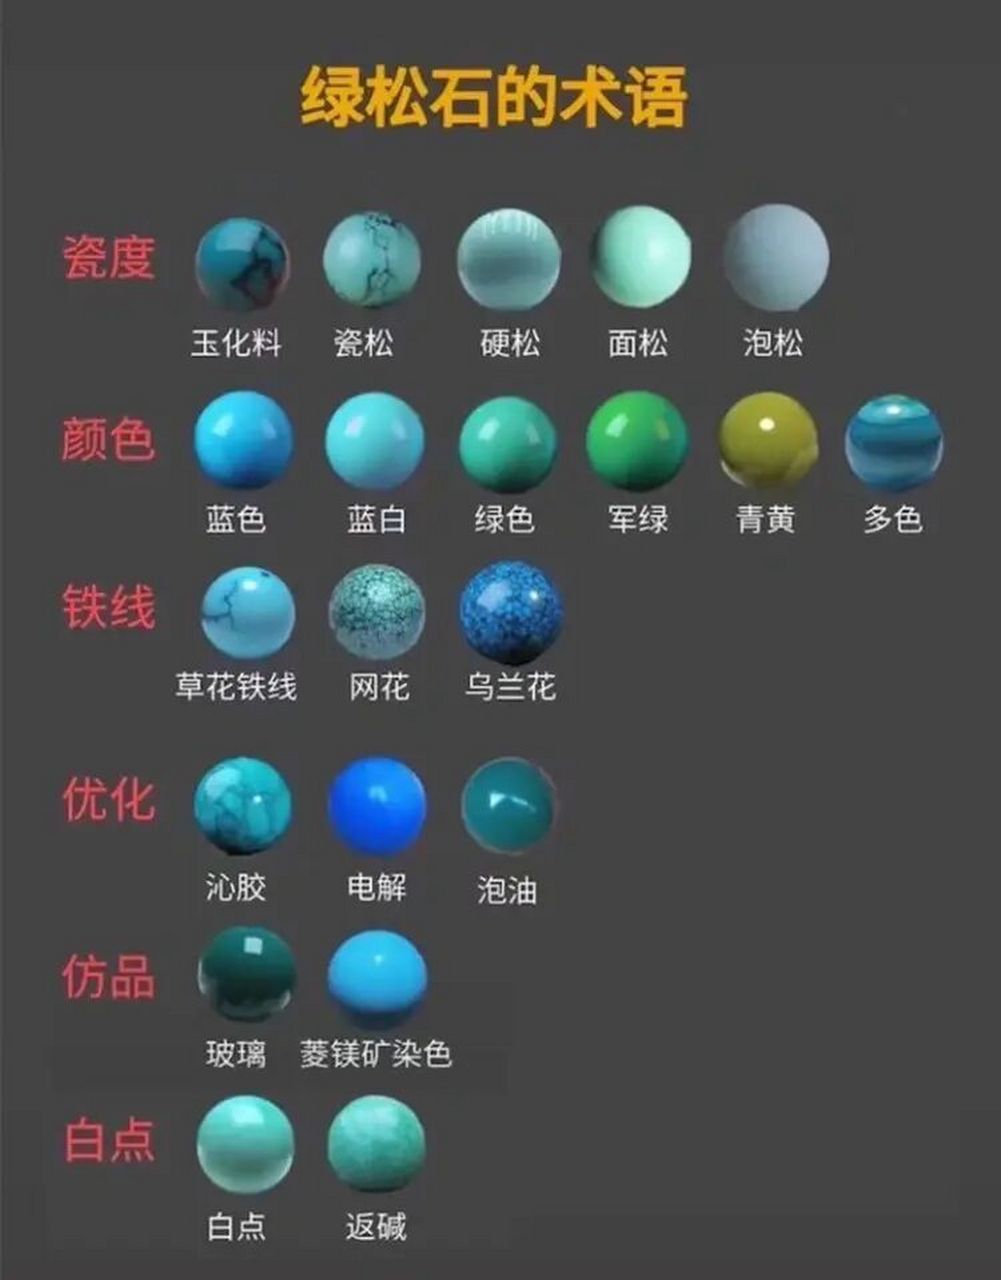 绿松石因所含元素的不同,颜色也有差异,氧化物中含铜时呈蓝色,含铁时